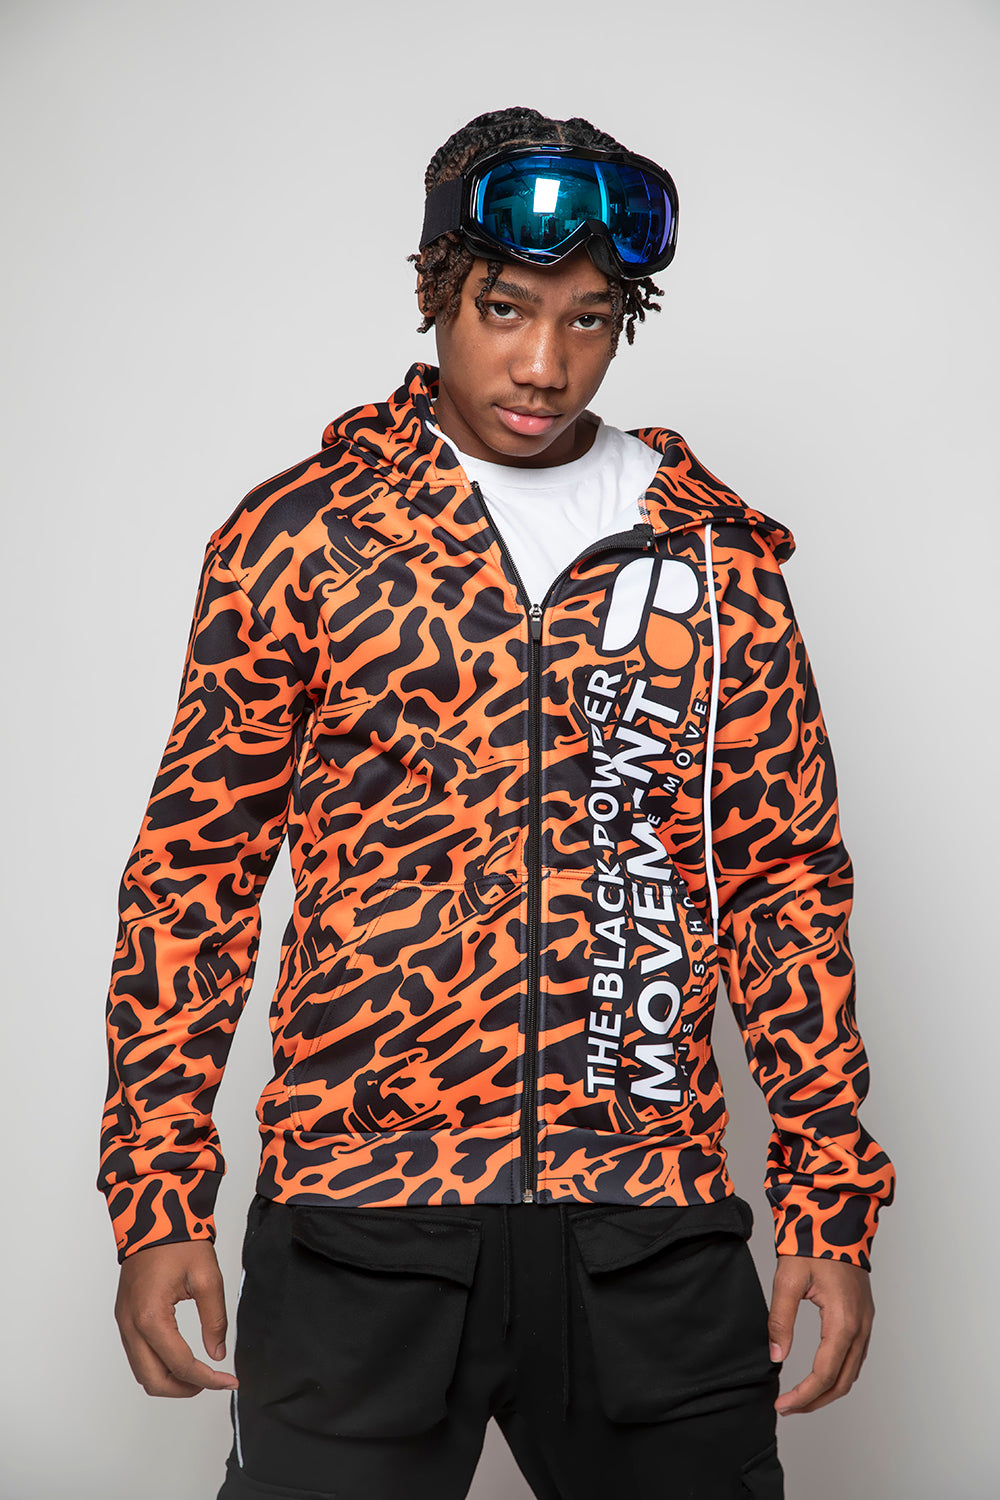 BeastMode Orange & Black Camo Jacket with Hood